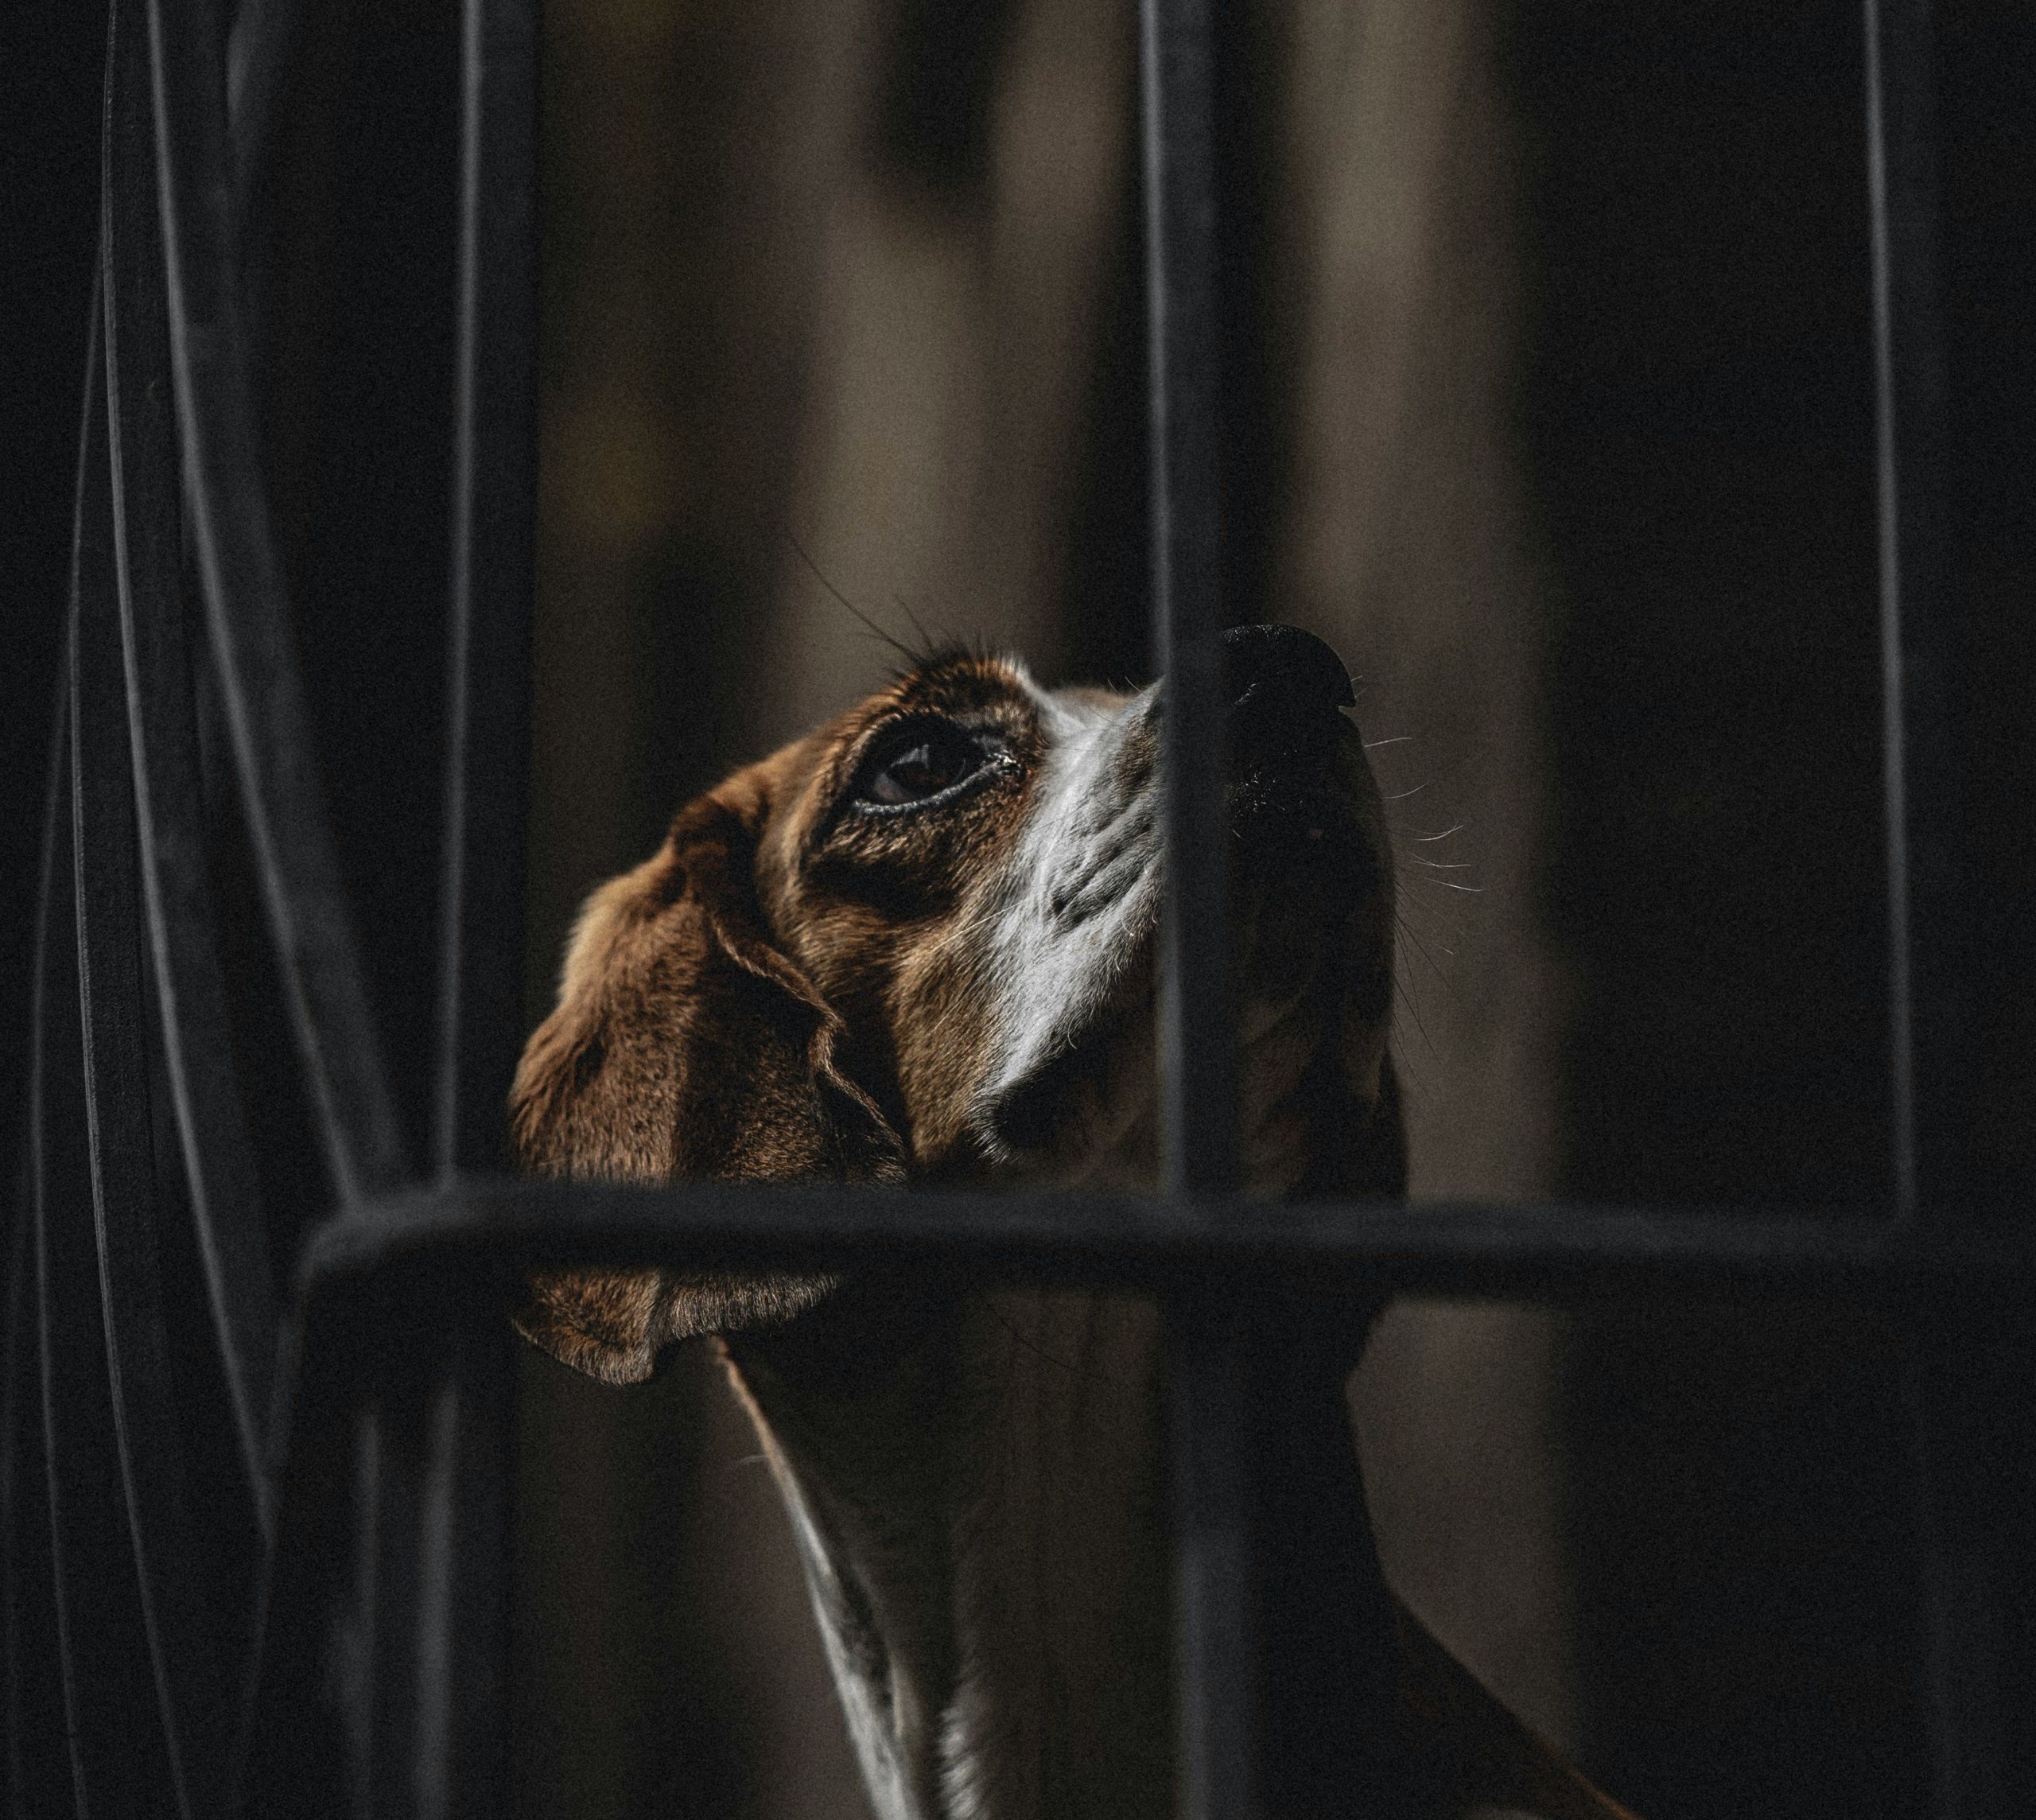 Έσερναν σκύλο από το παράθυρο στο Ναύπλιο: Φρικιαστικές εικόνες